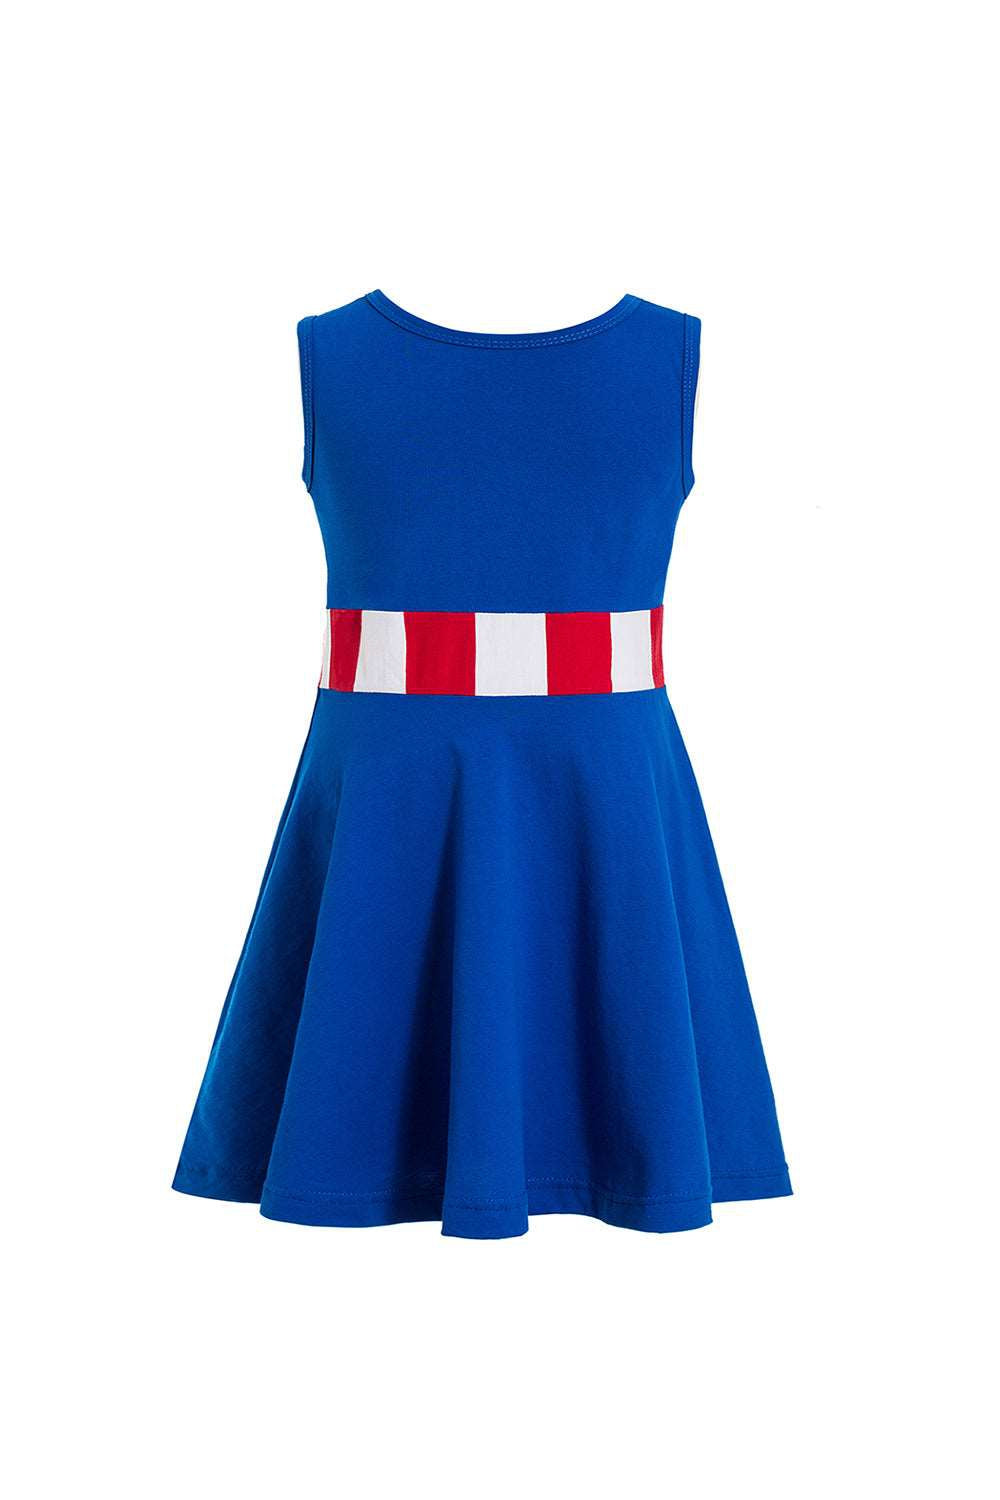 Super Hero inspired dresses - Halloween Fancy dress - Captain America dress